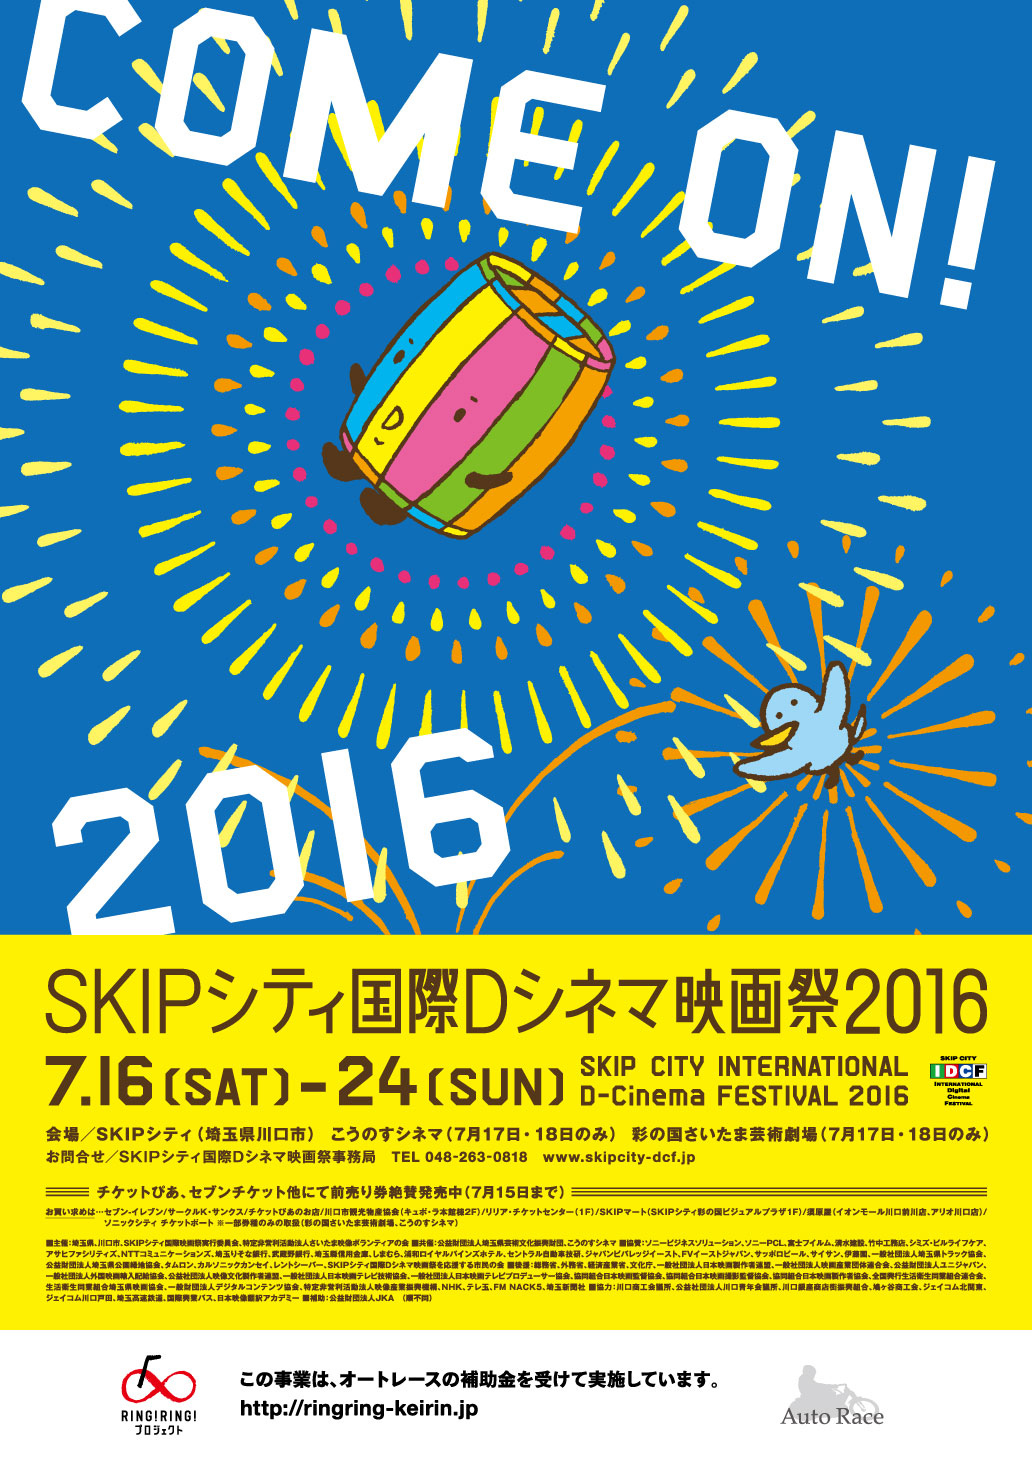 SKIPシティ国際Dシネマ映画祭2016ポスター